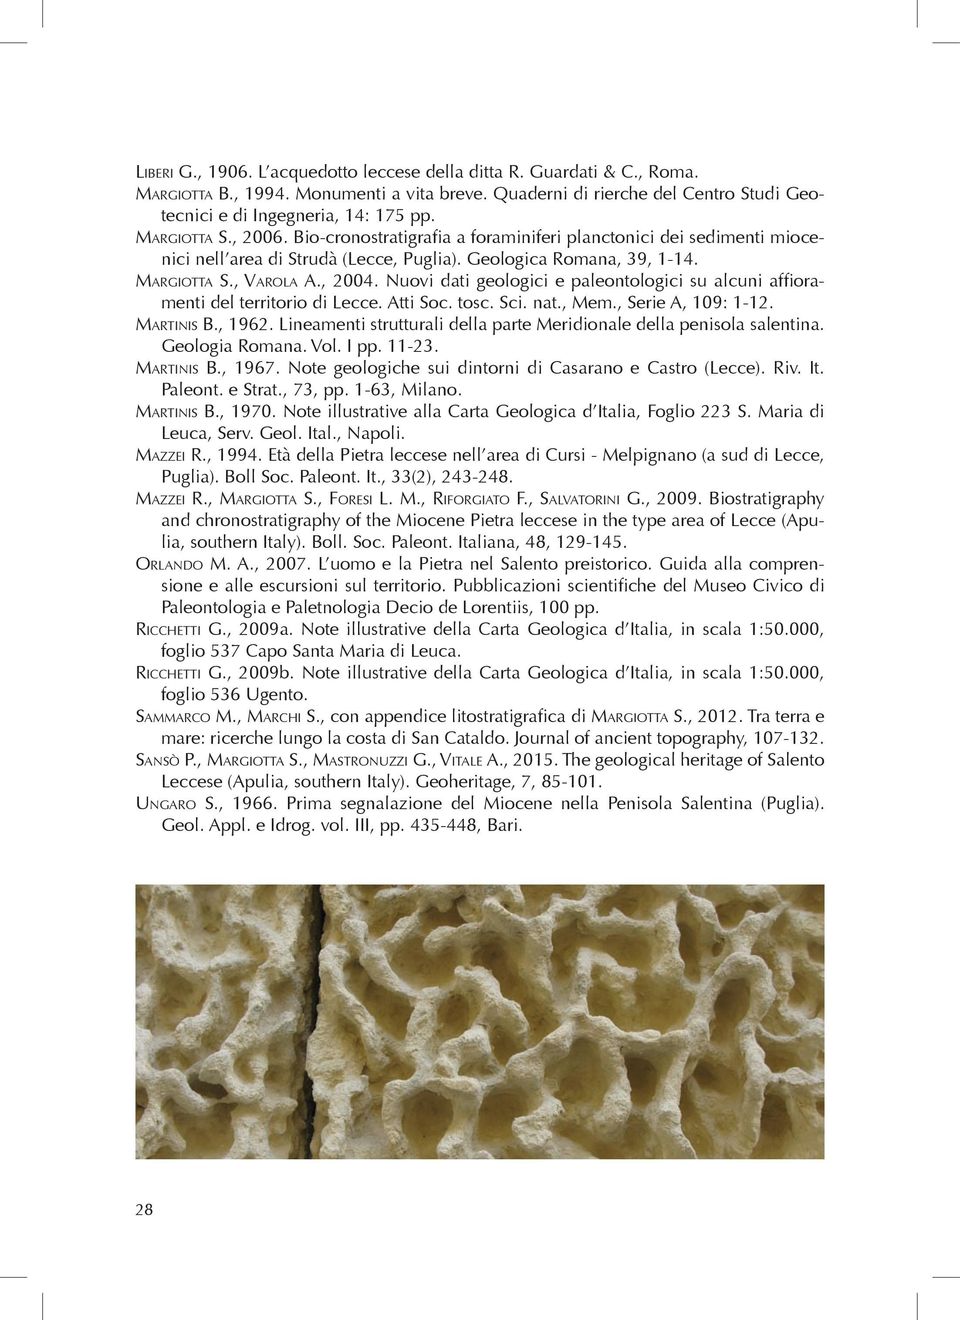 Nuovi dati geologici e paleontologici su alcuni affioramenti del territorio di Lecce. Atti Soc. tosc. Sci. nat., Mem., Serie A, 109: 1-12. Martinis B., 1962.